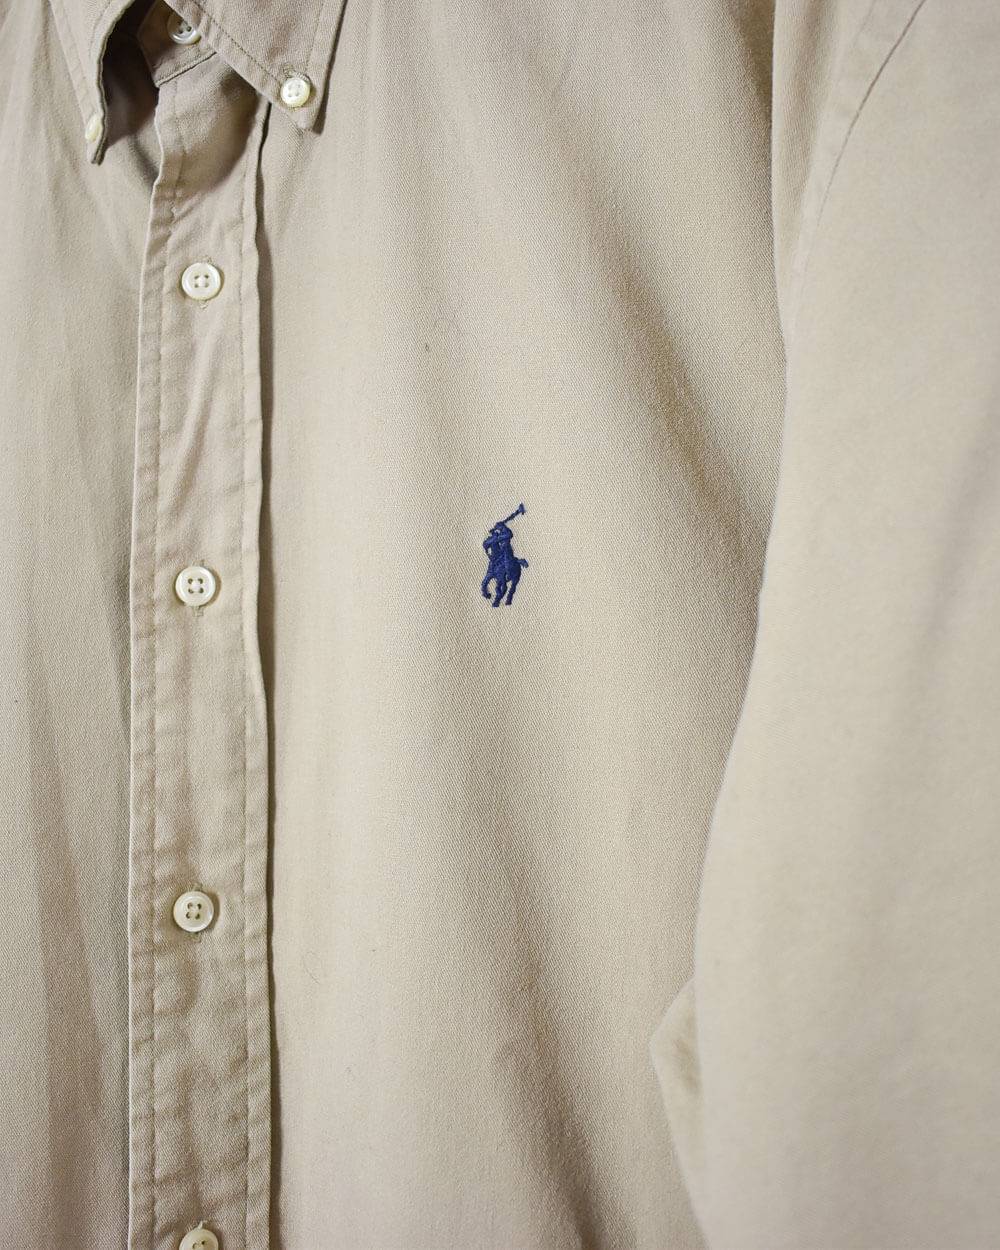 Neutral Ralph Lauren Short-Sleeved Shirt - Large